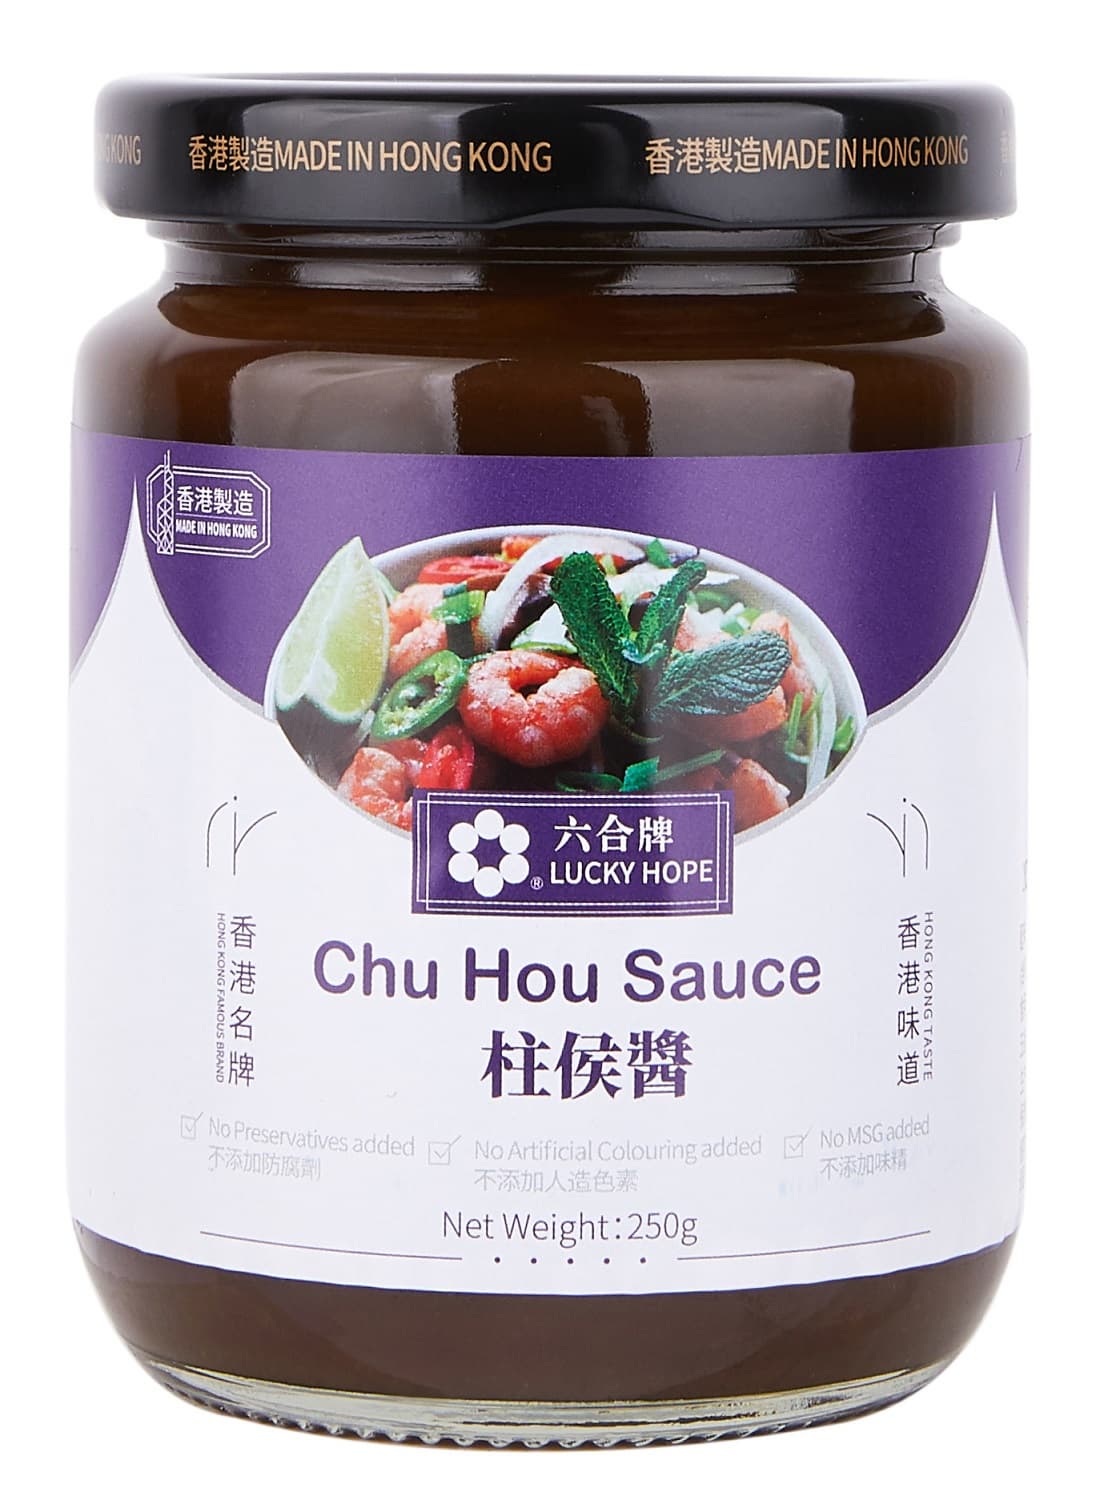 Chu Hou Sauce